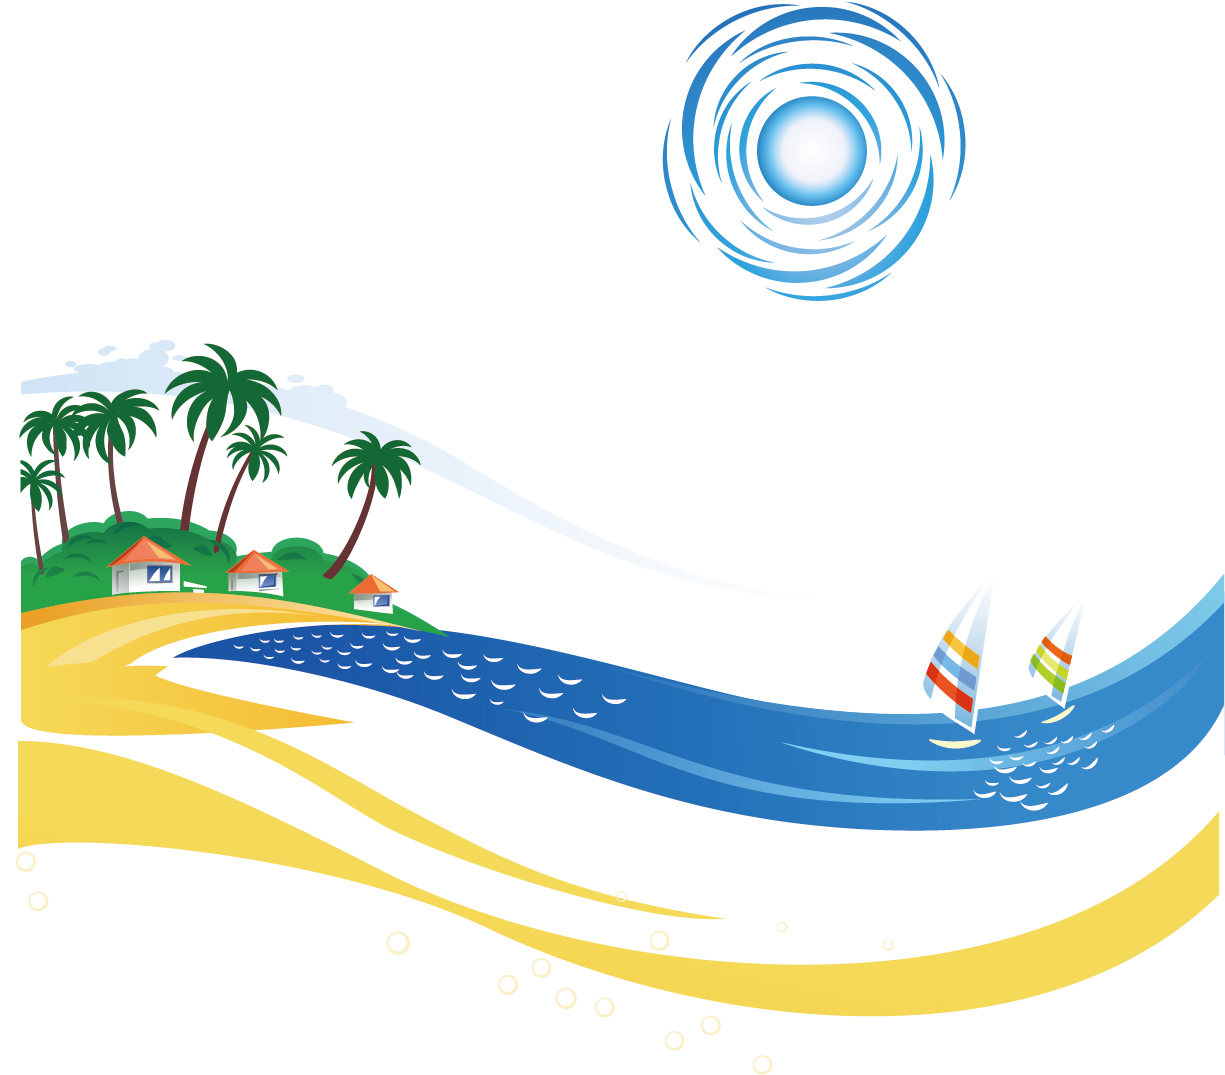 Sea Tree Illustration - Sea Tree Illustration (1240x1354)